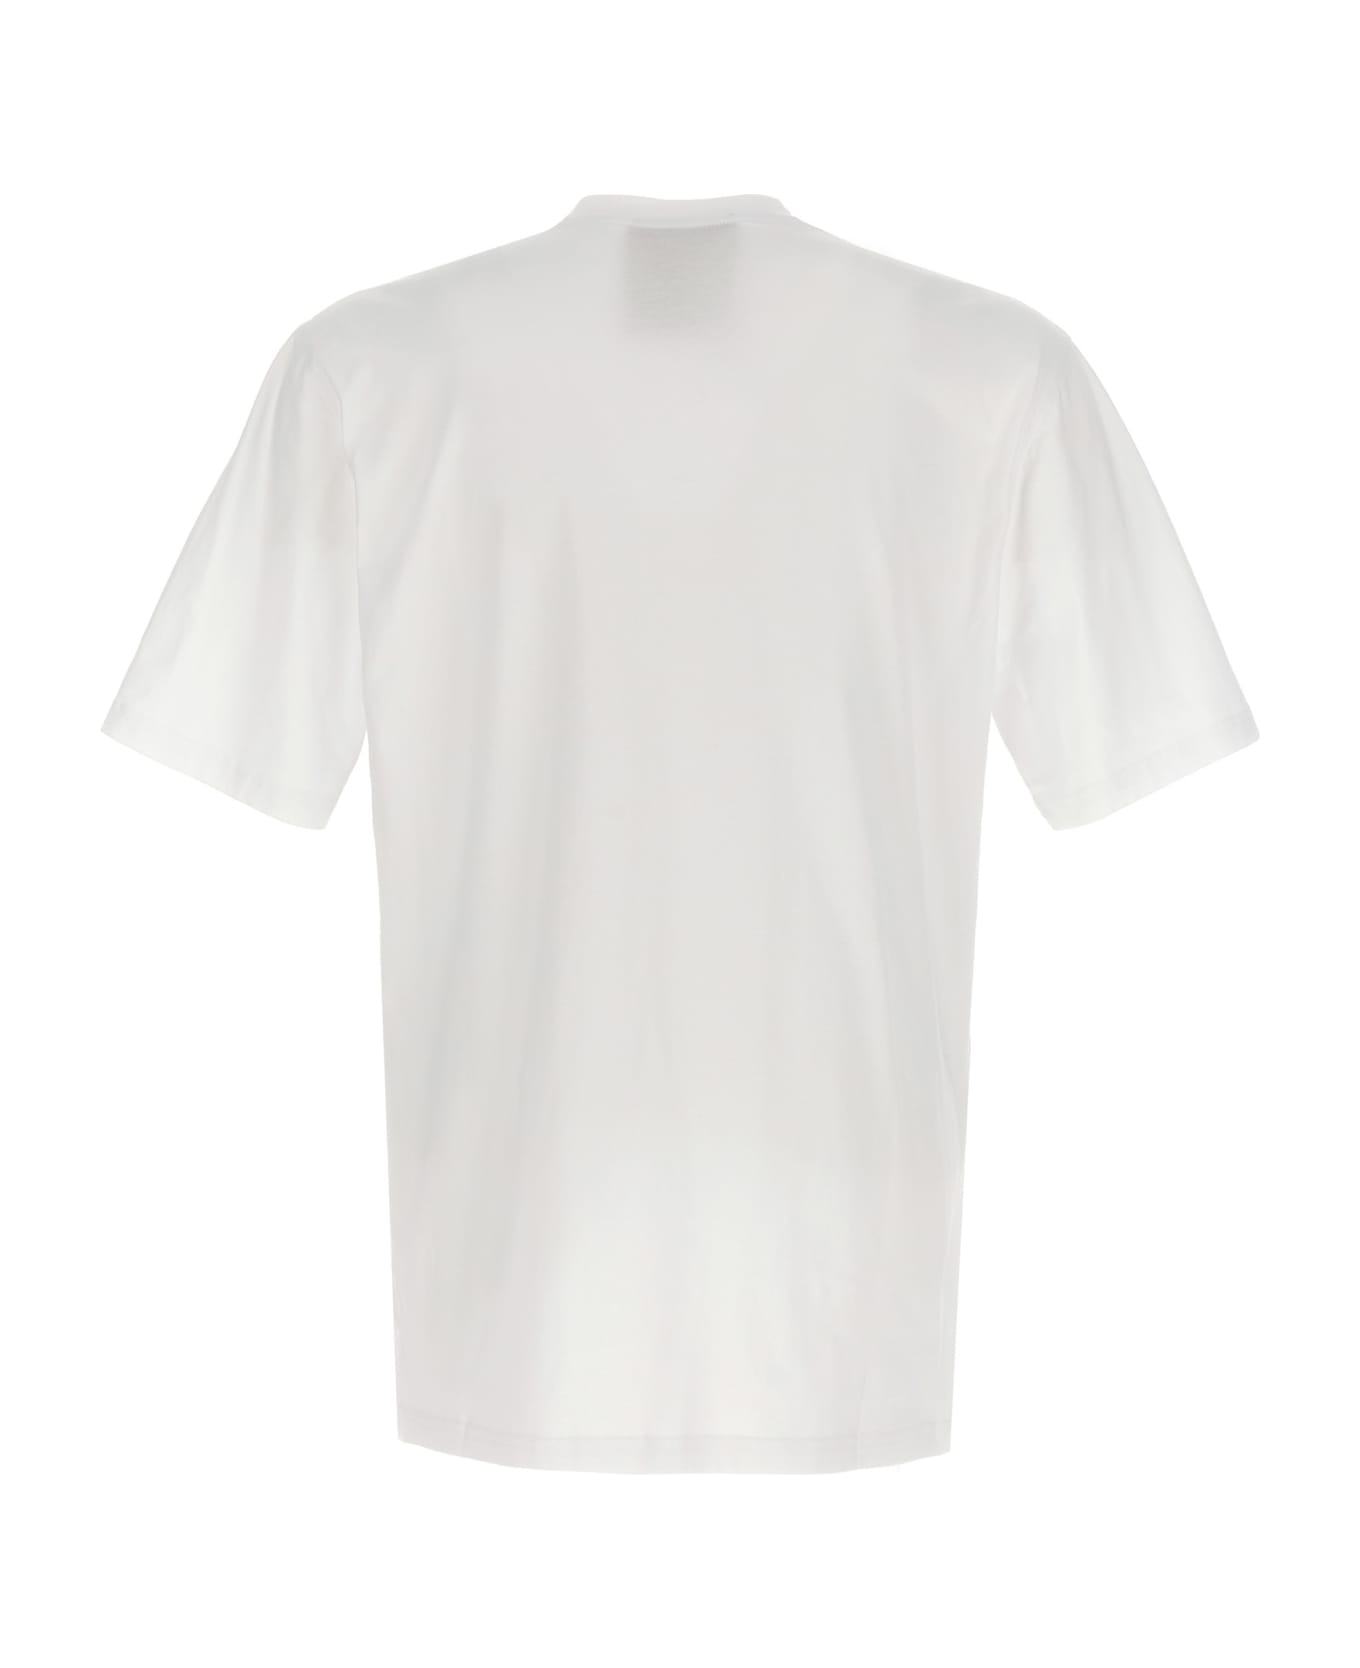 Moschino 'double Smile' T-shirt - White/Black